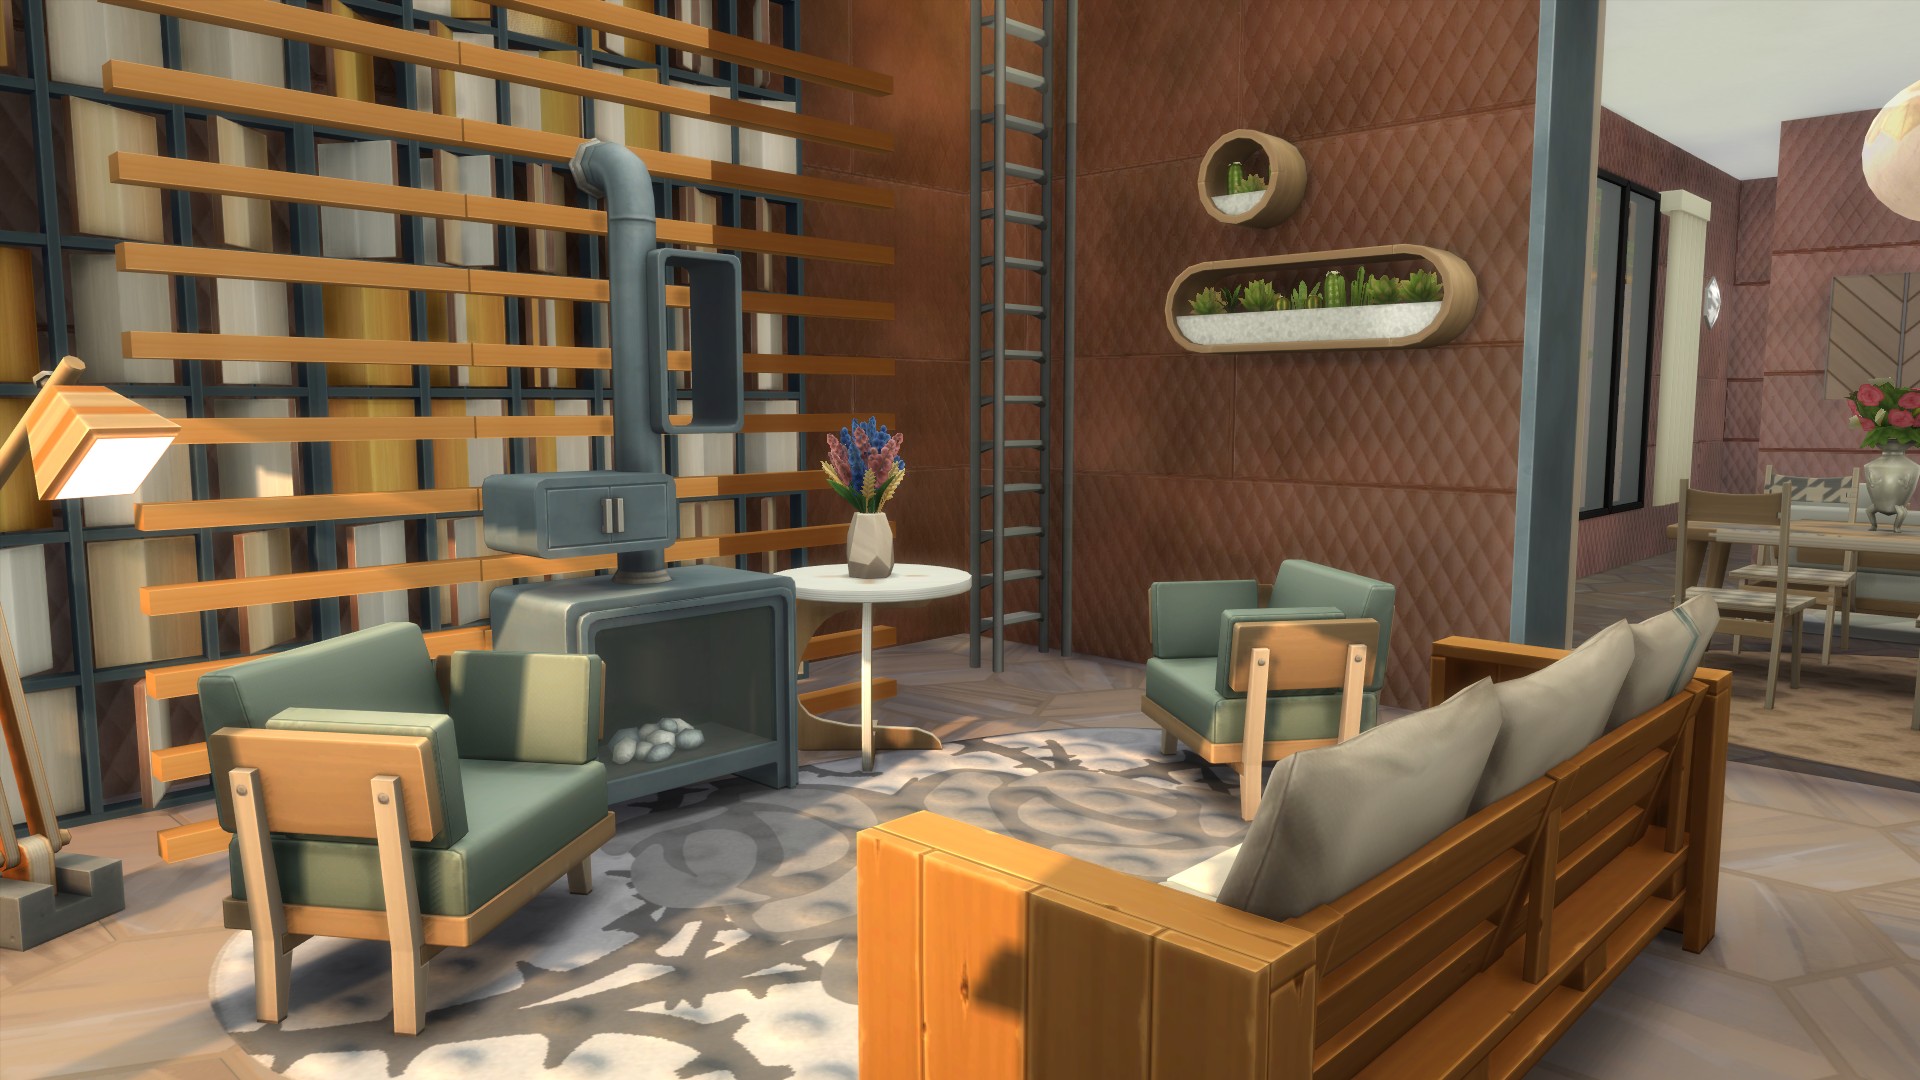 The Sims: 13 construções incríveis que você pode criar e nem imagina (Foto: Arquivo Pessoal)